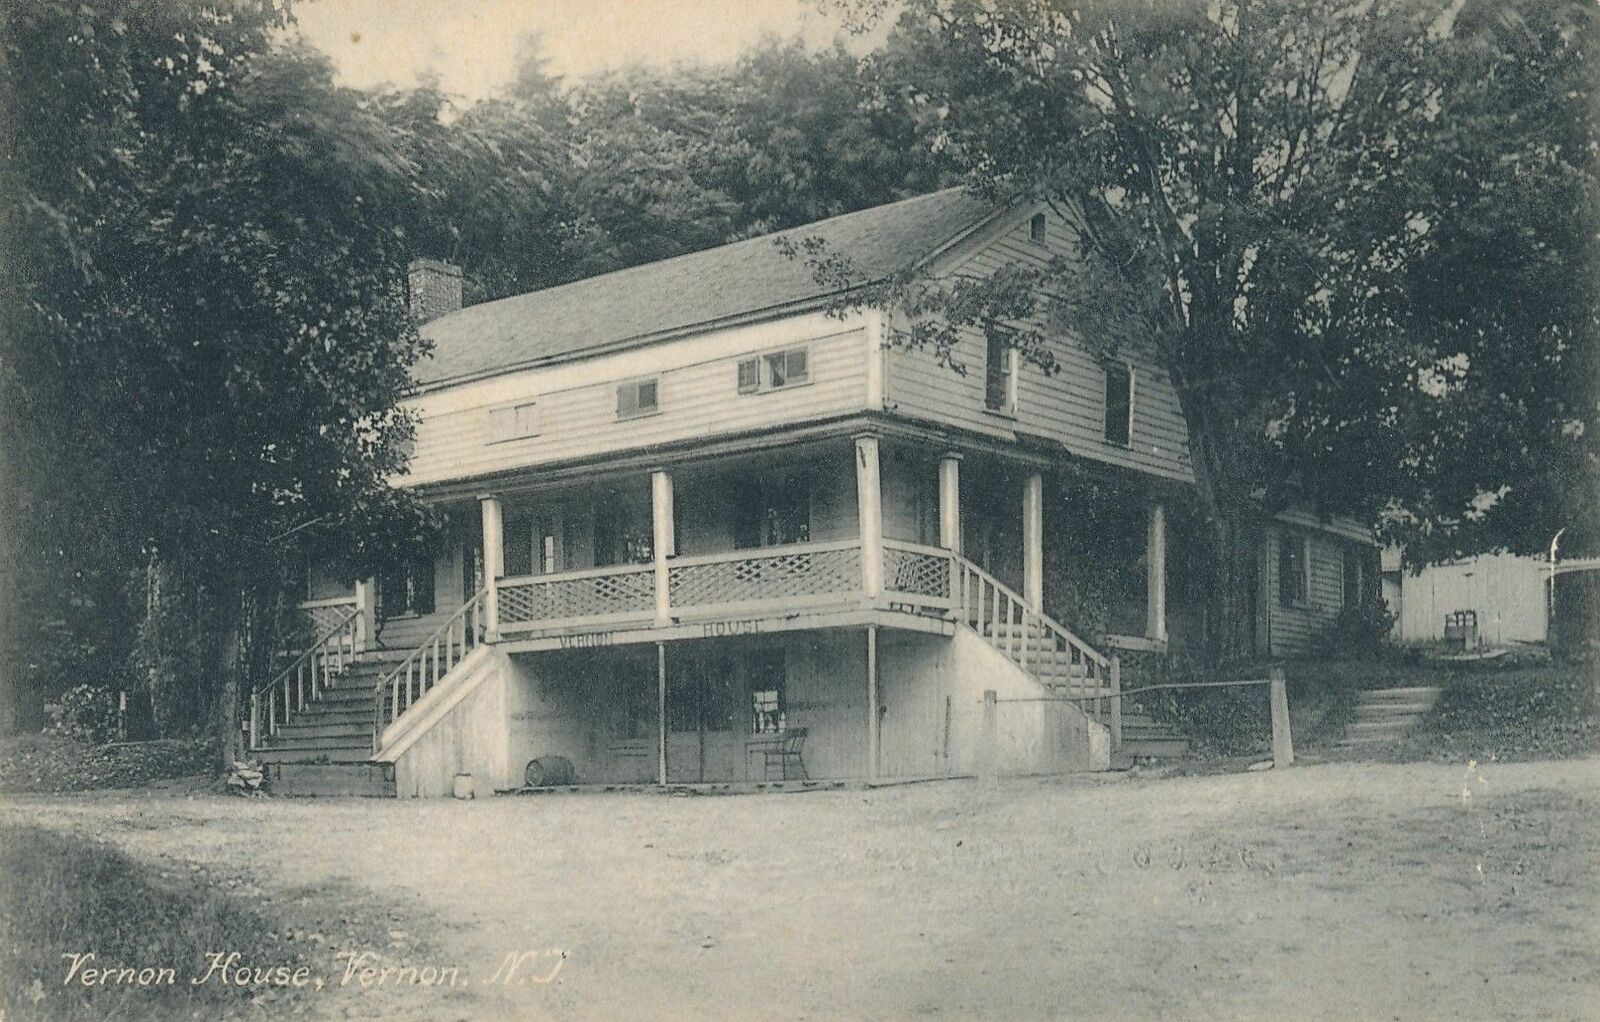 VERNON NJ - Vernon House - 1908